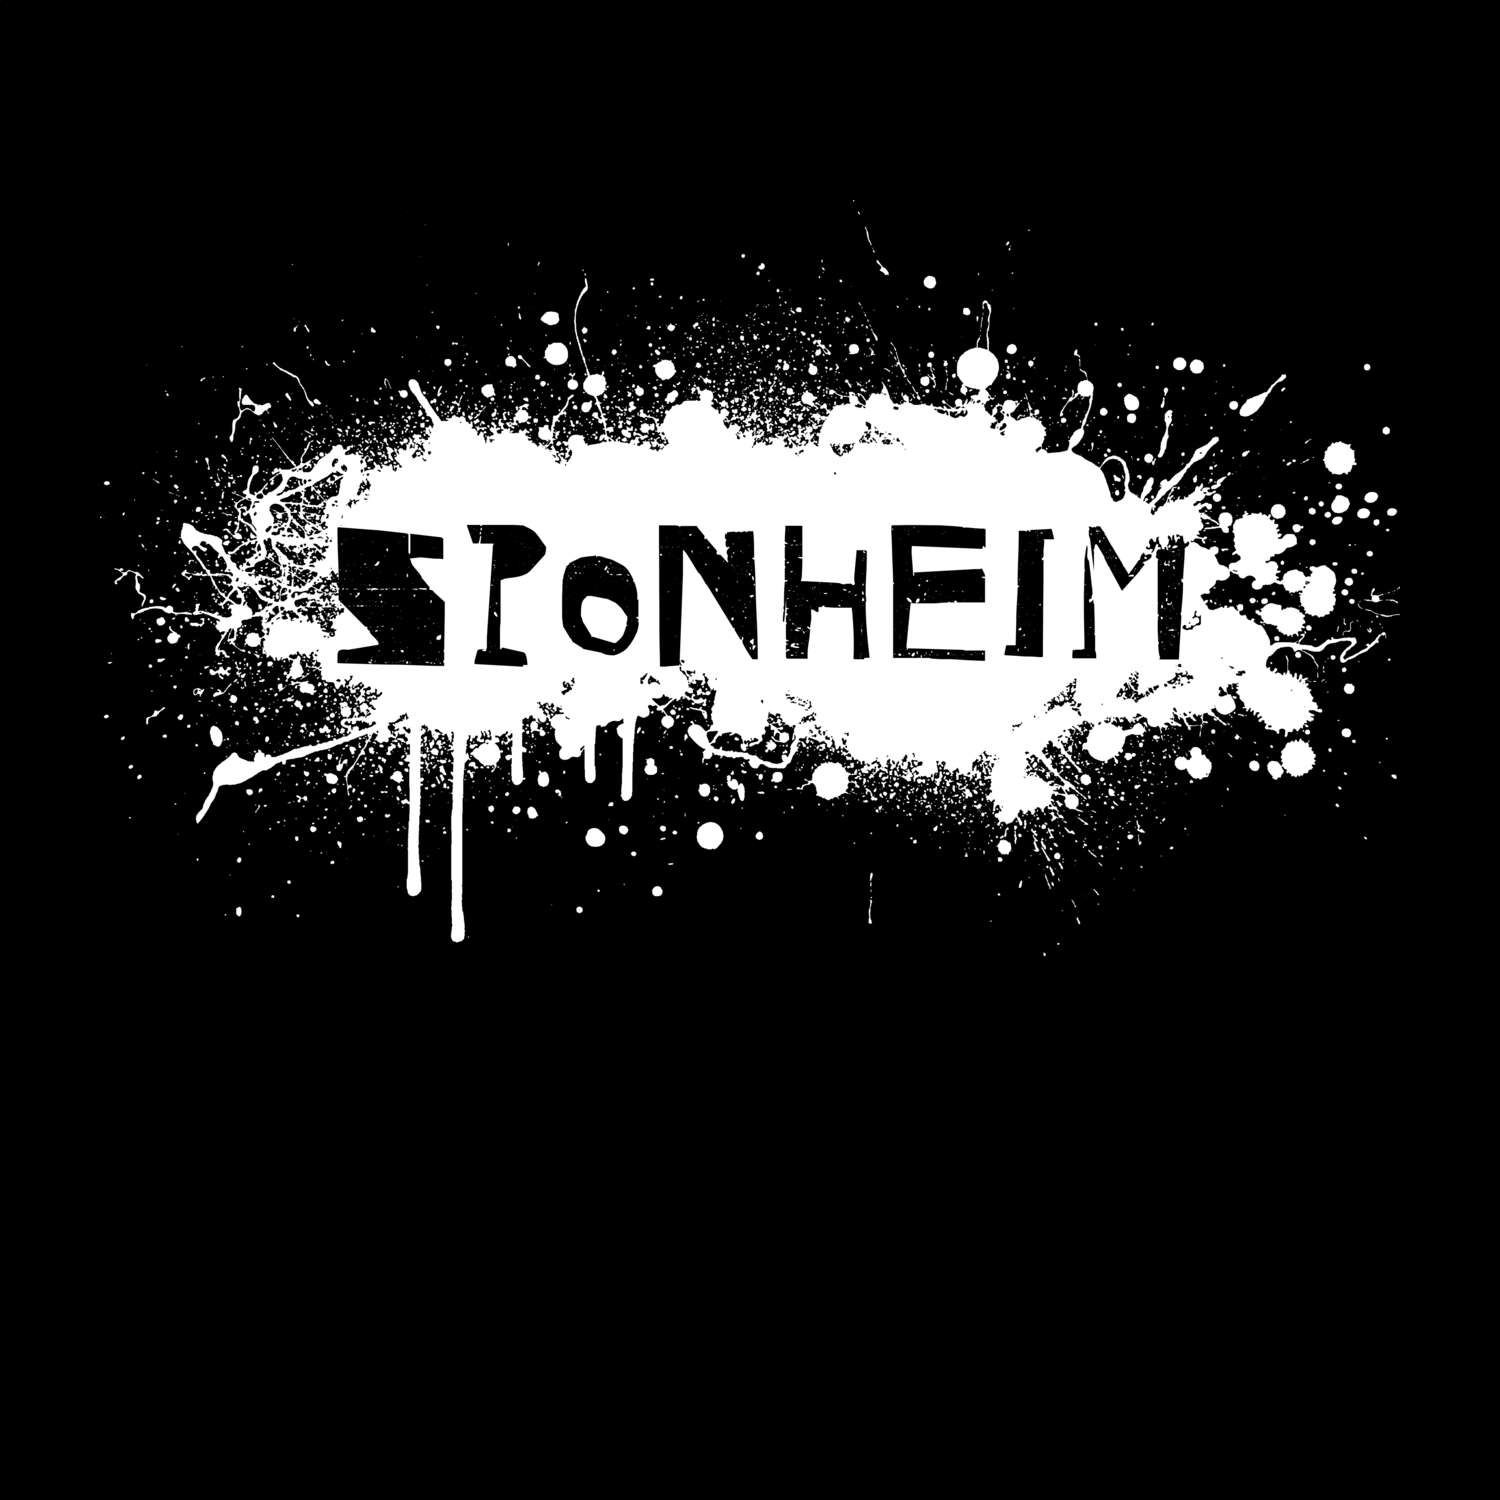 Sponheim T-Shirt »Paint Splash Punk«